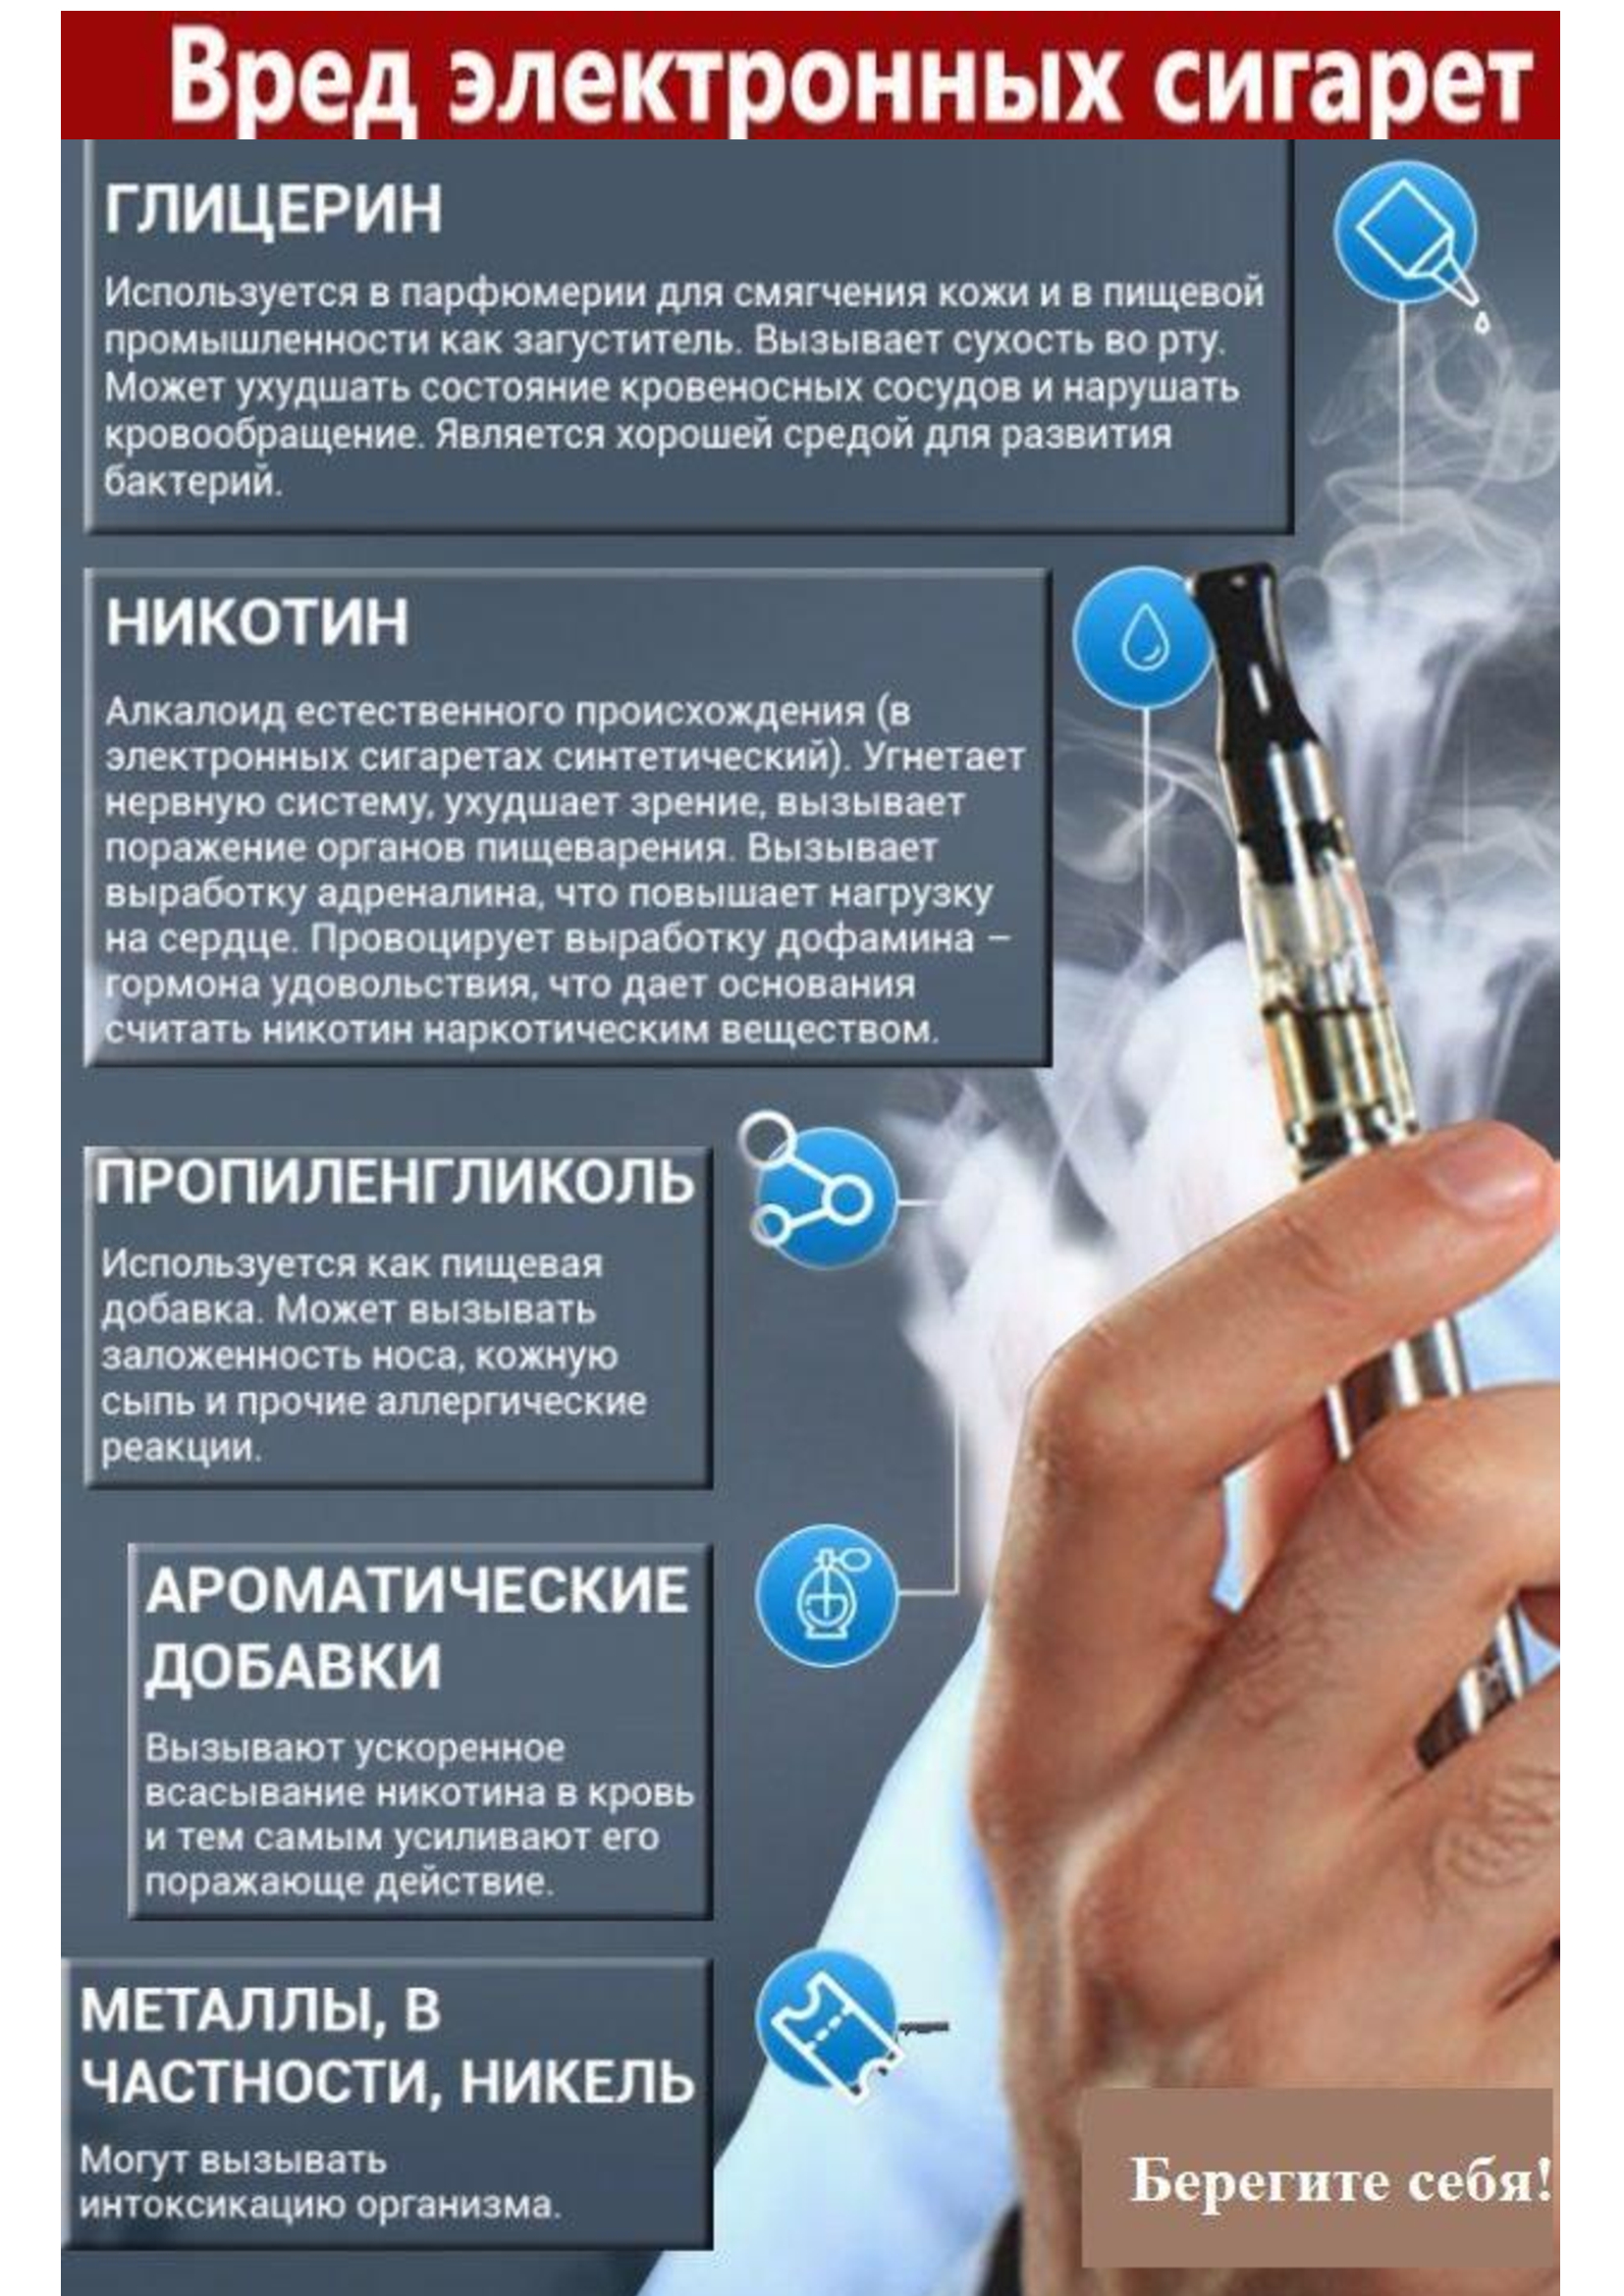 Курить в уразу. Вред электронных сигарет. Чем вредны электронные сигареты. Электронки сигареты. Электронные сигареты вред для здоровья.